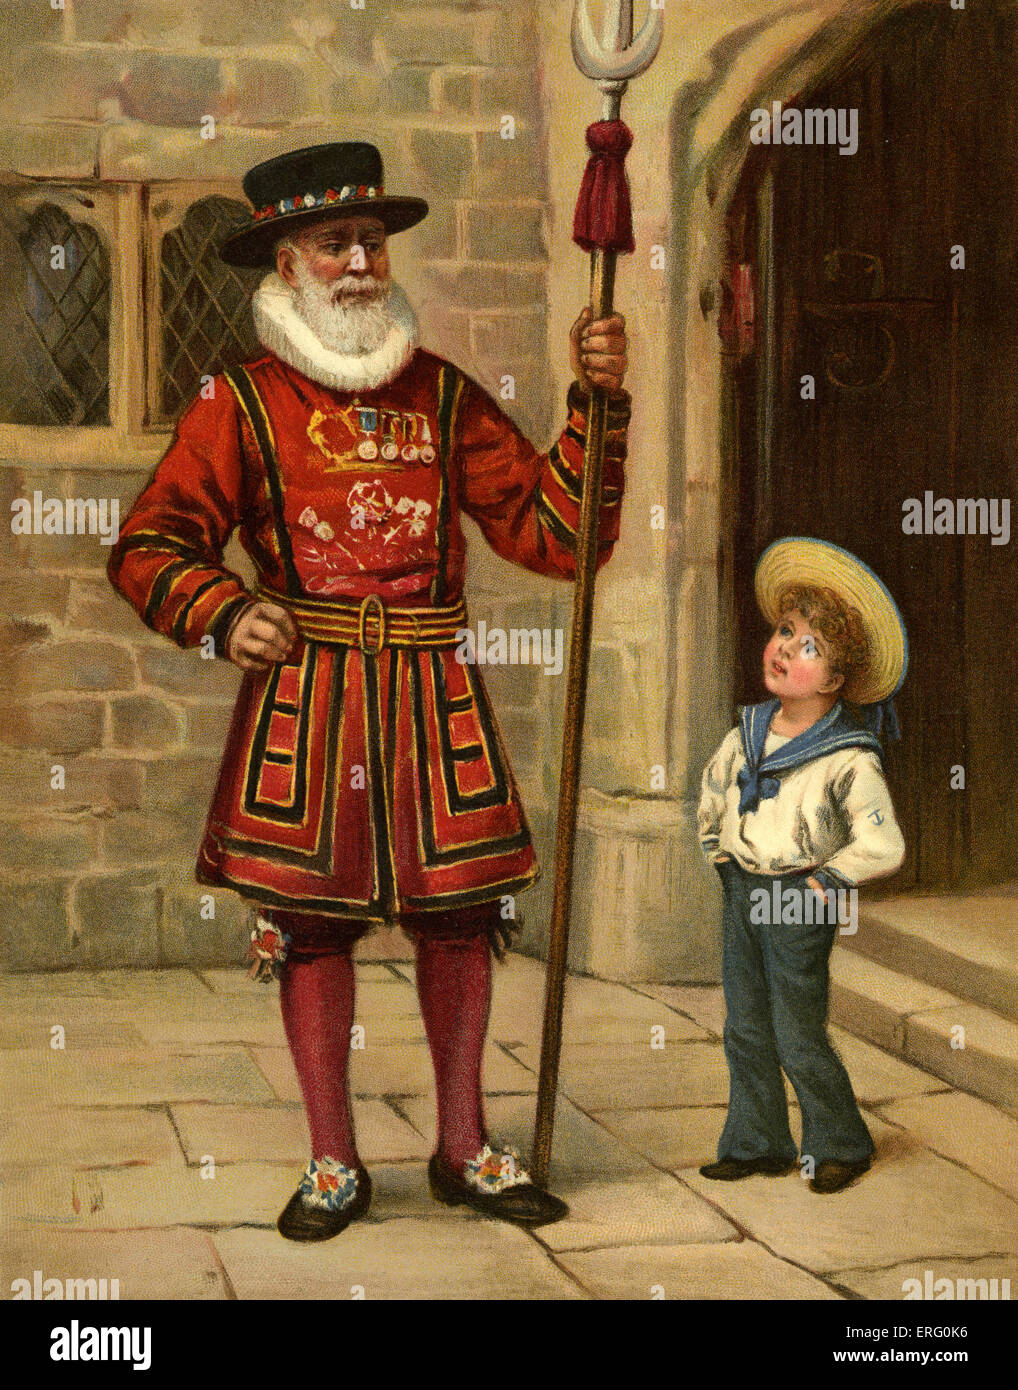 Yeoman Of The Guard oder Beefeater /Yeoman Warder. Sie sind zeremonielle Wächter des Tower of London.  Edwardian Abbildung. Stockfoto